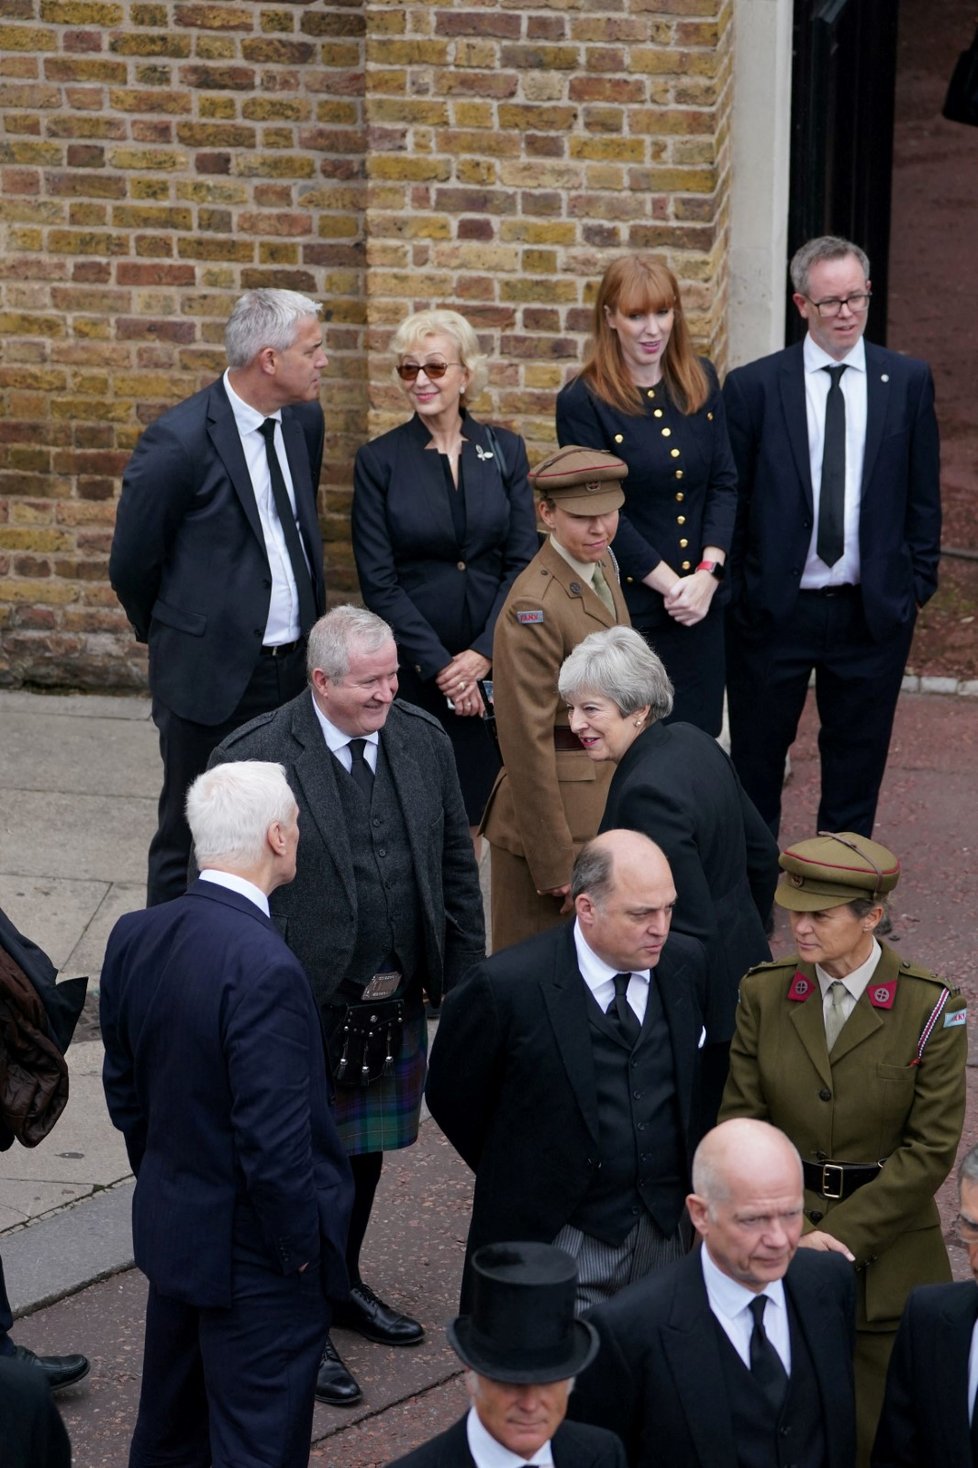 Stephen Barclay, Andrea Leadsom, Angela Rayner, bývalá premiérka Theresa May a ministr obrany Ben Wallace na Nástupnické radě